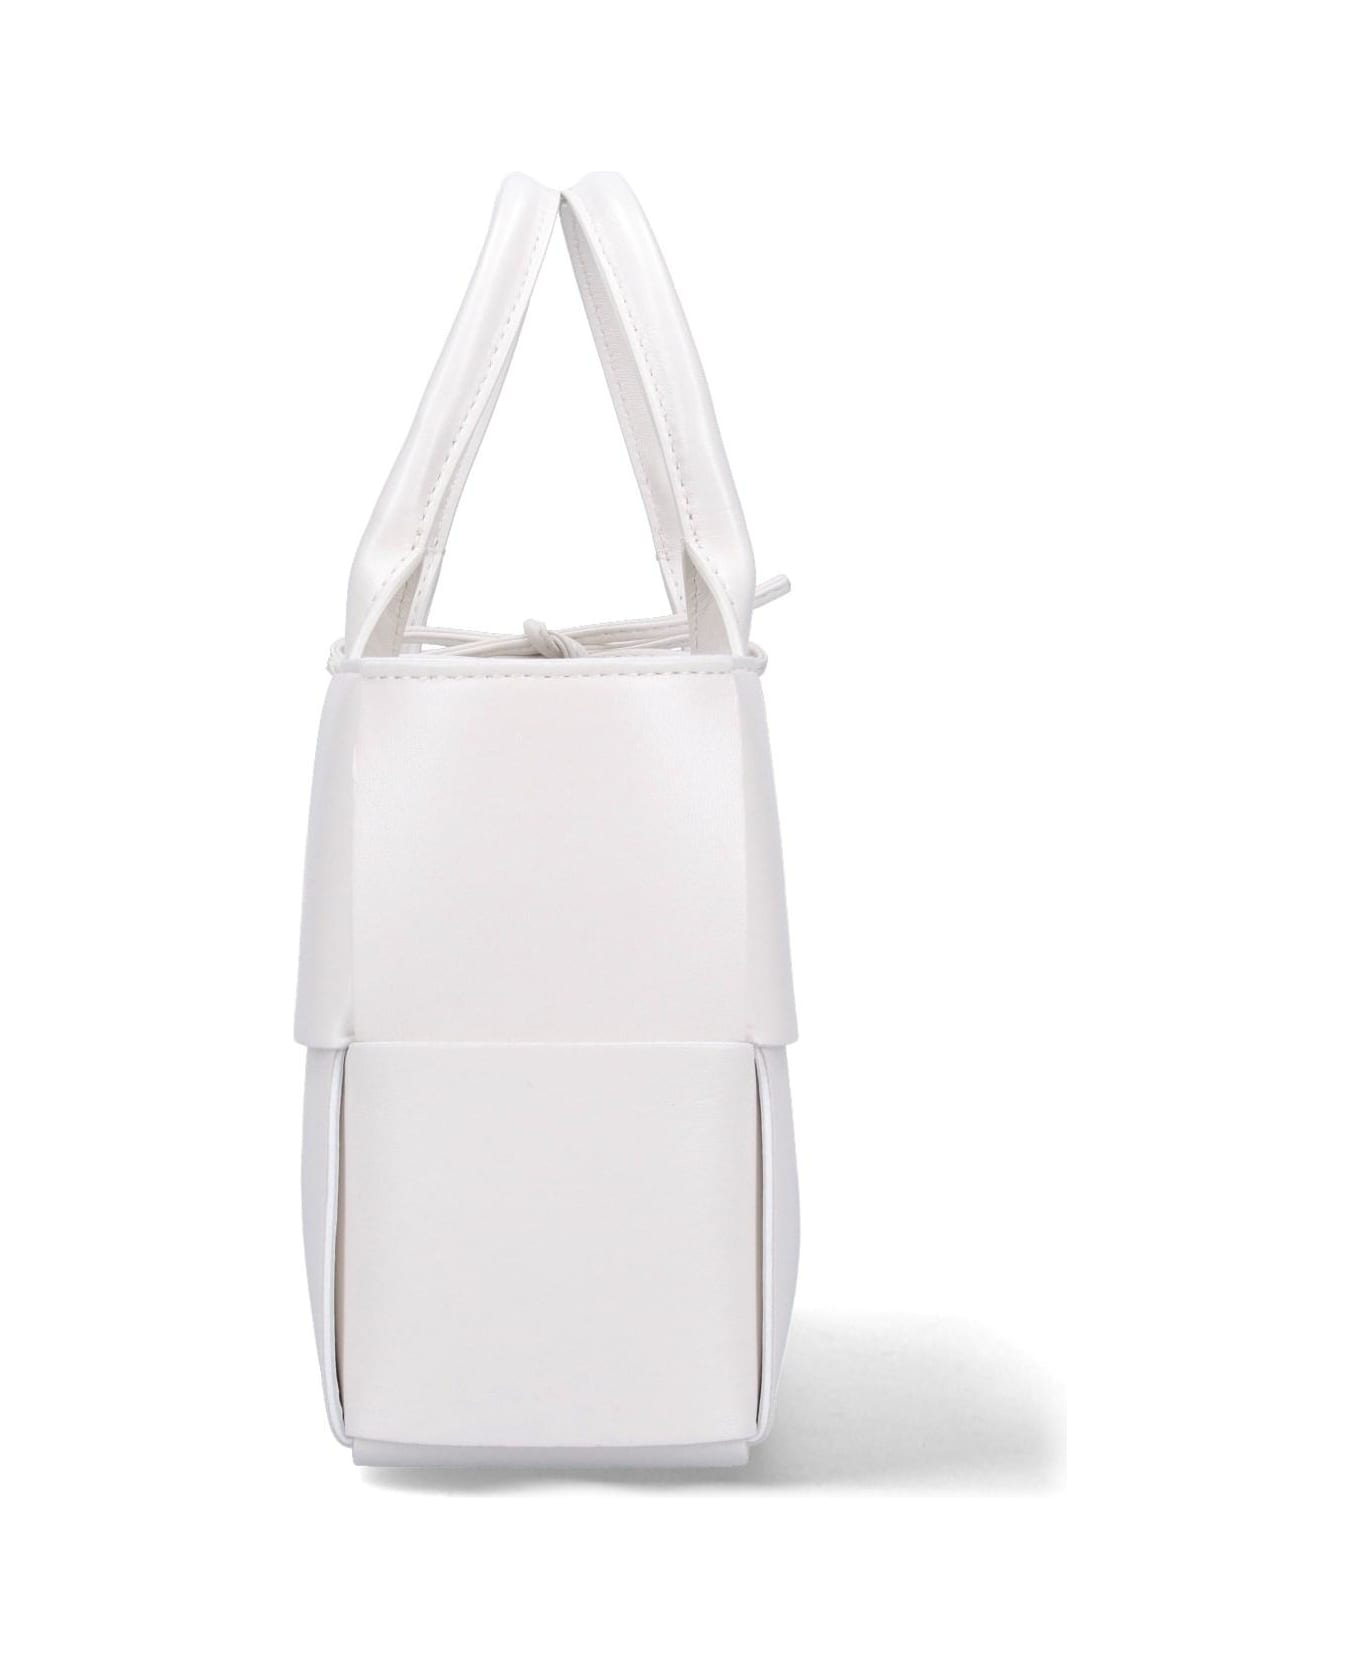 Bottega Veneta 'arco' Mini Tote Bag - White Gold トートバッグ